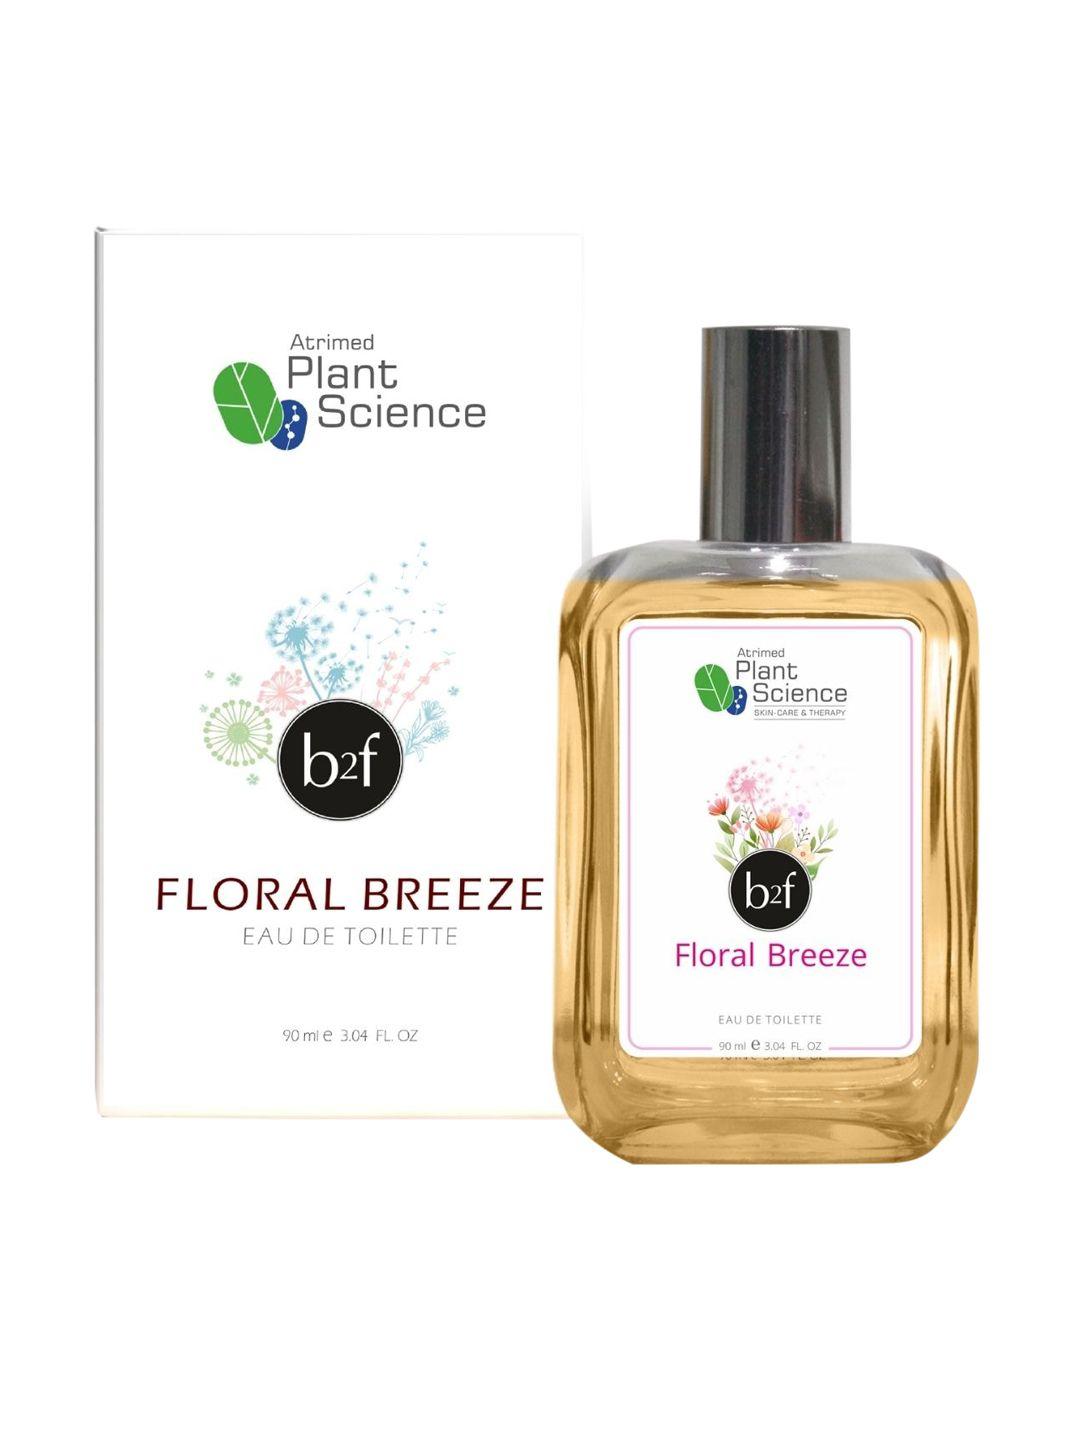 atrimed-plant-science-b2f-floral-breeze-eau-de-toilette---90-ml